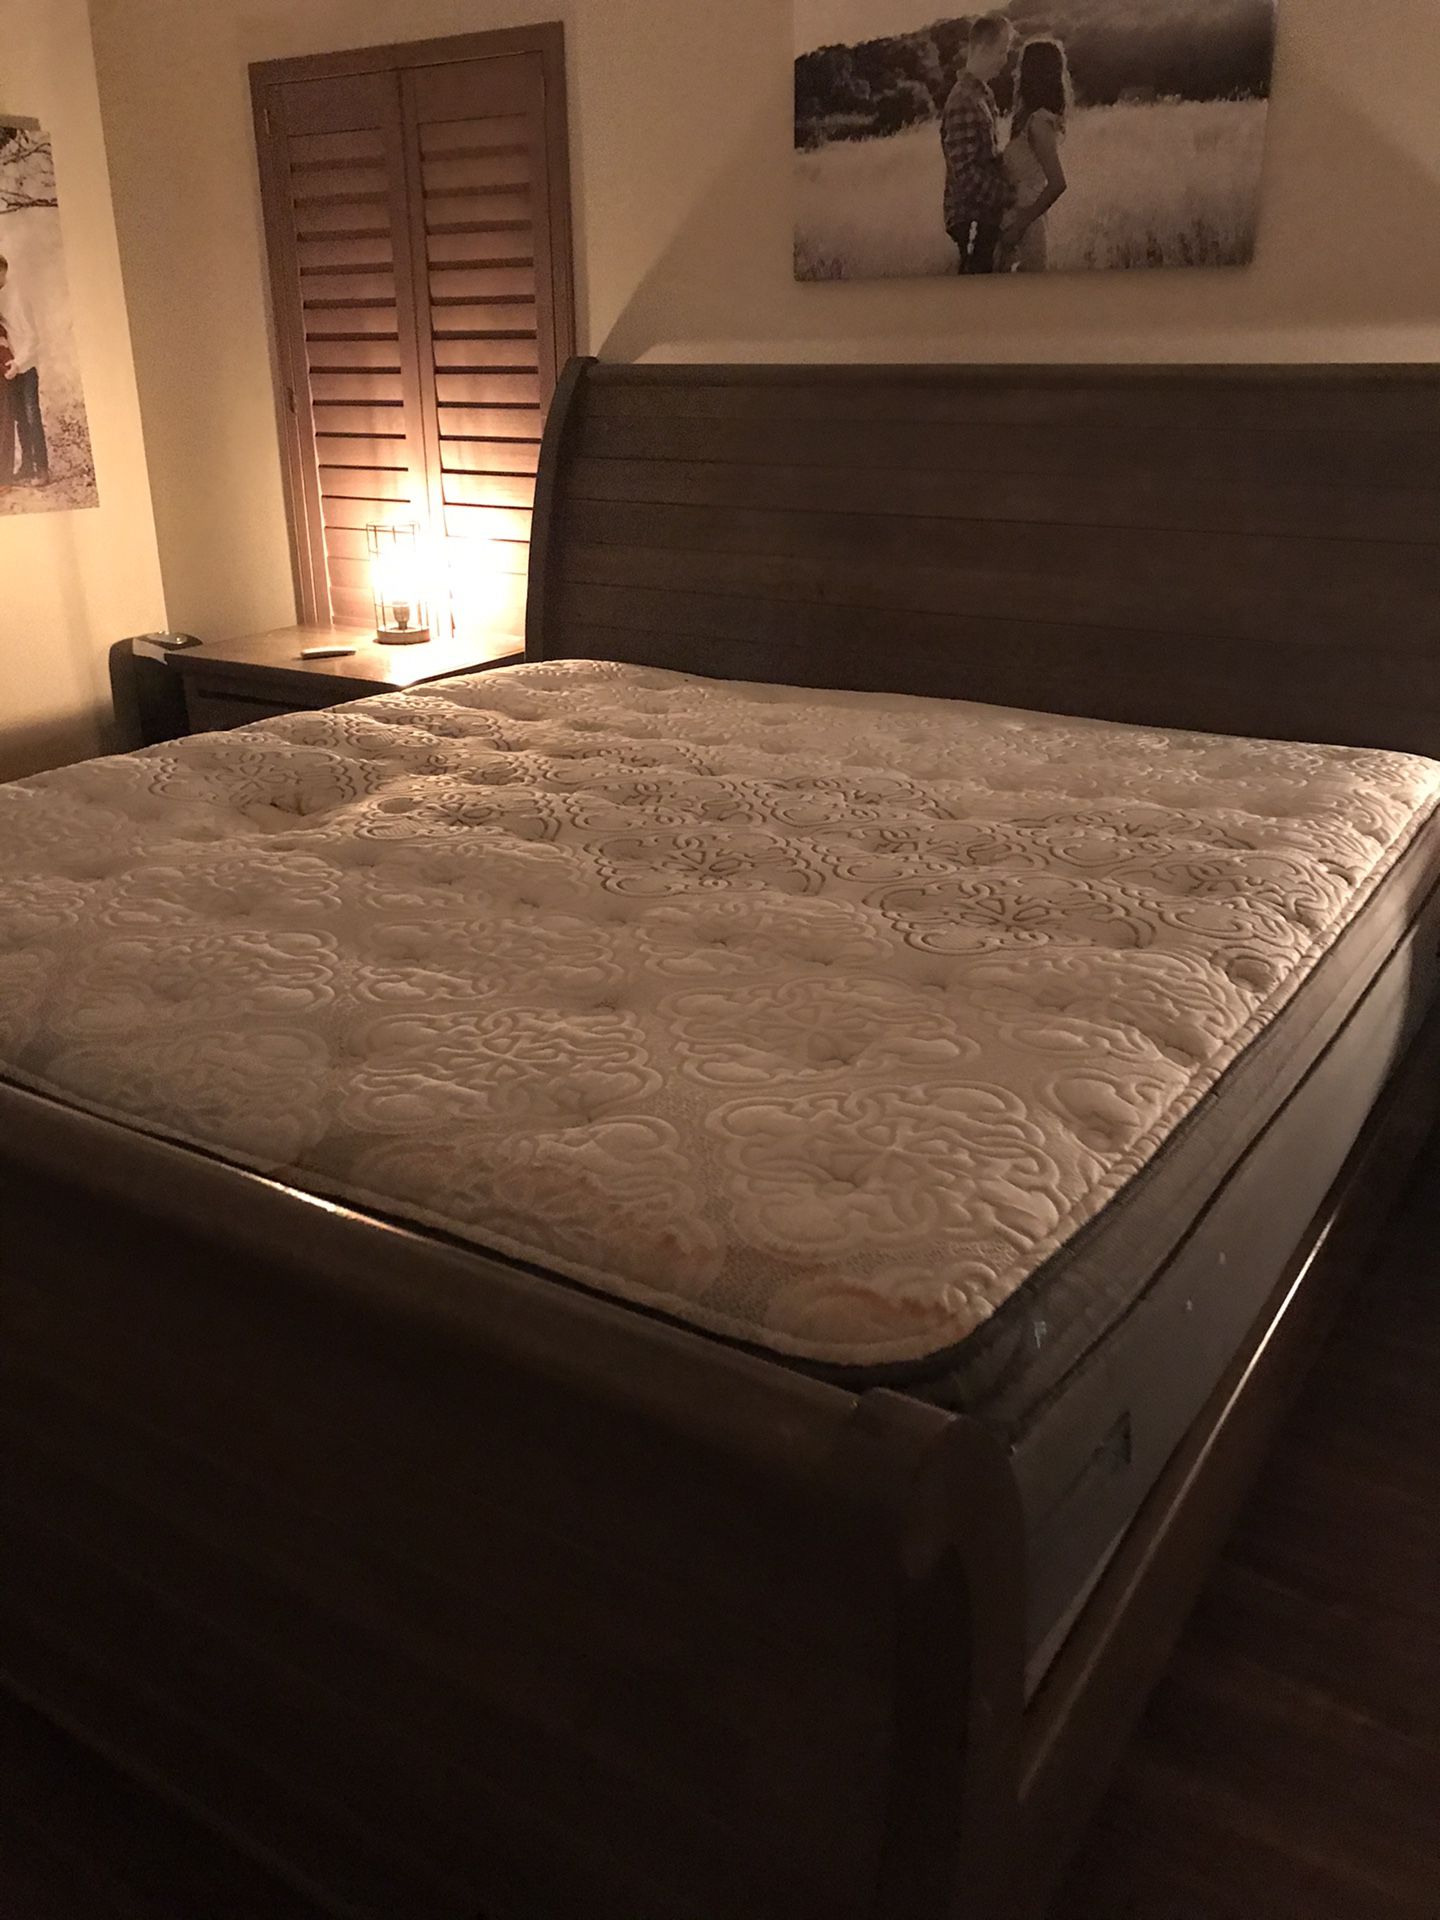 Free king mattress